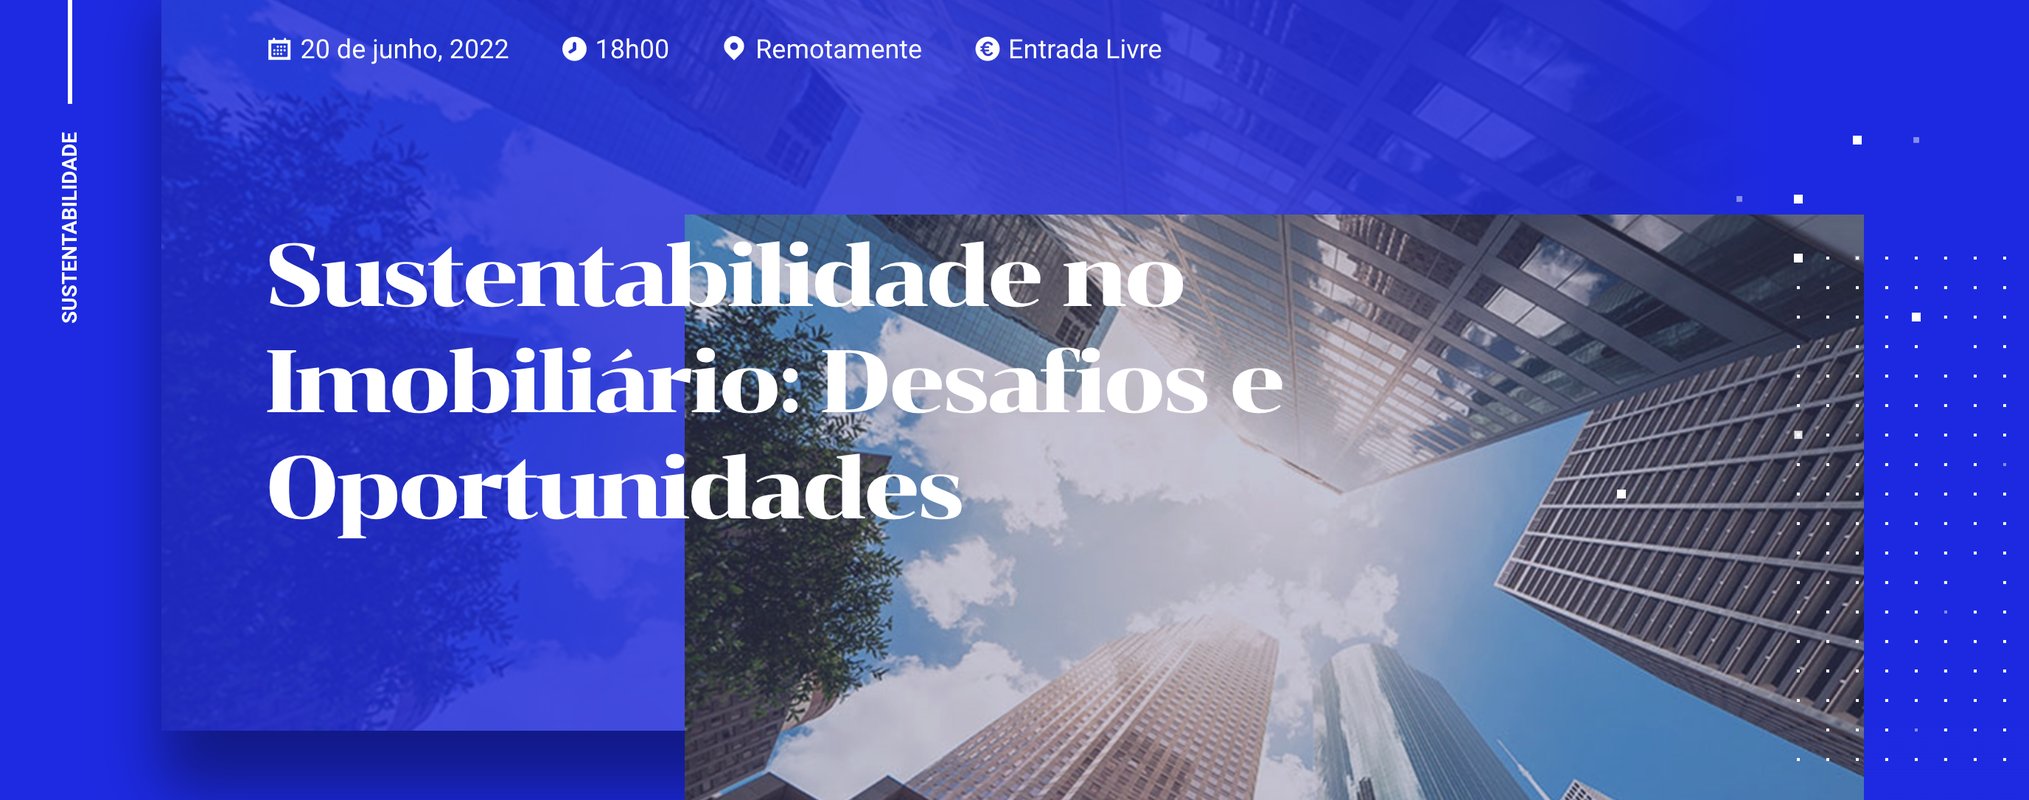 Porto Business School organiza ciclo de webinars